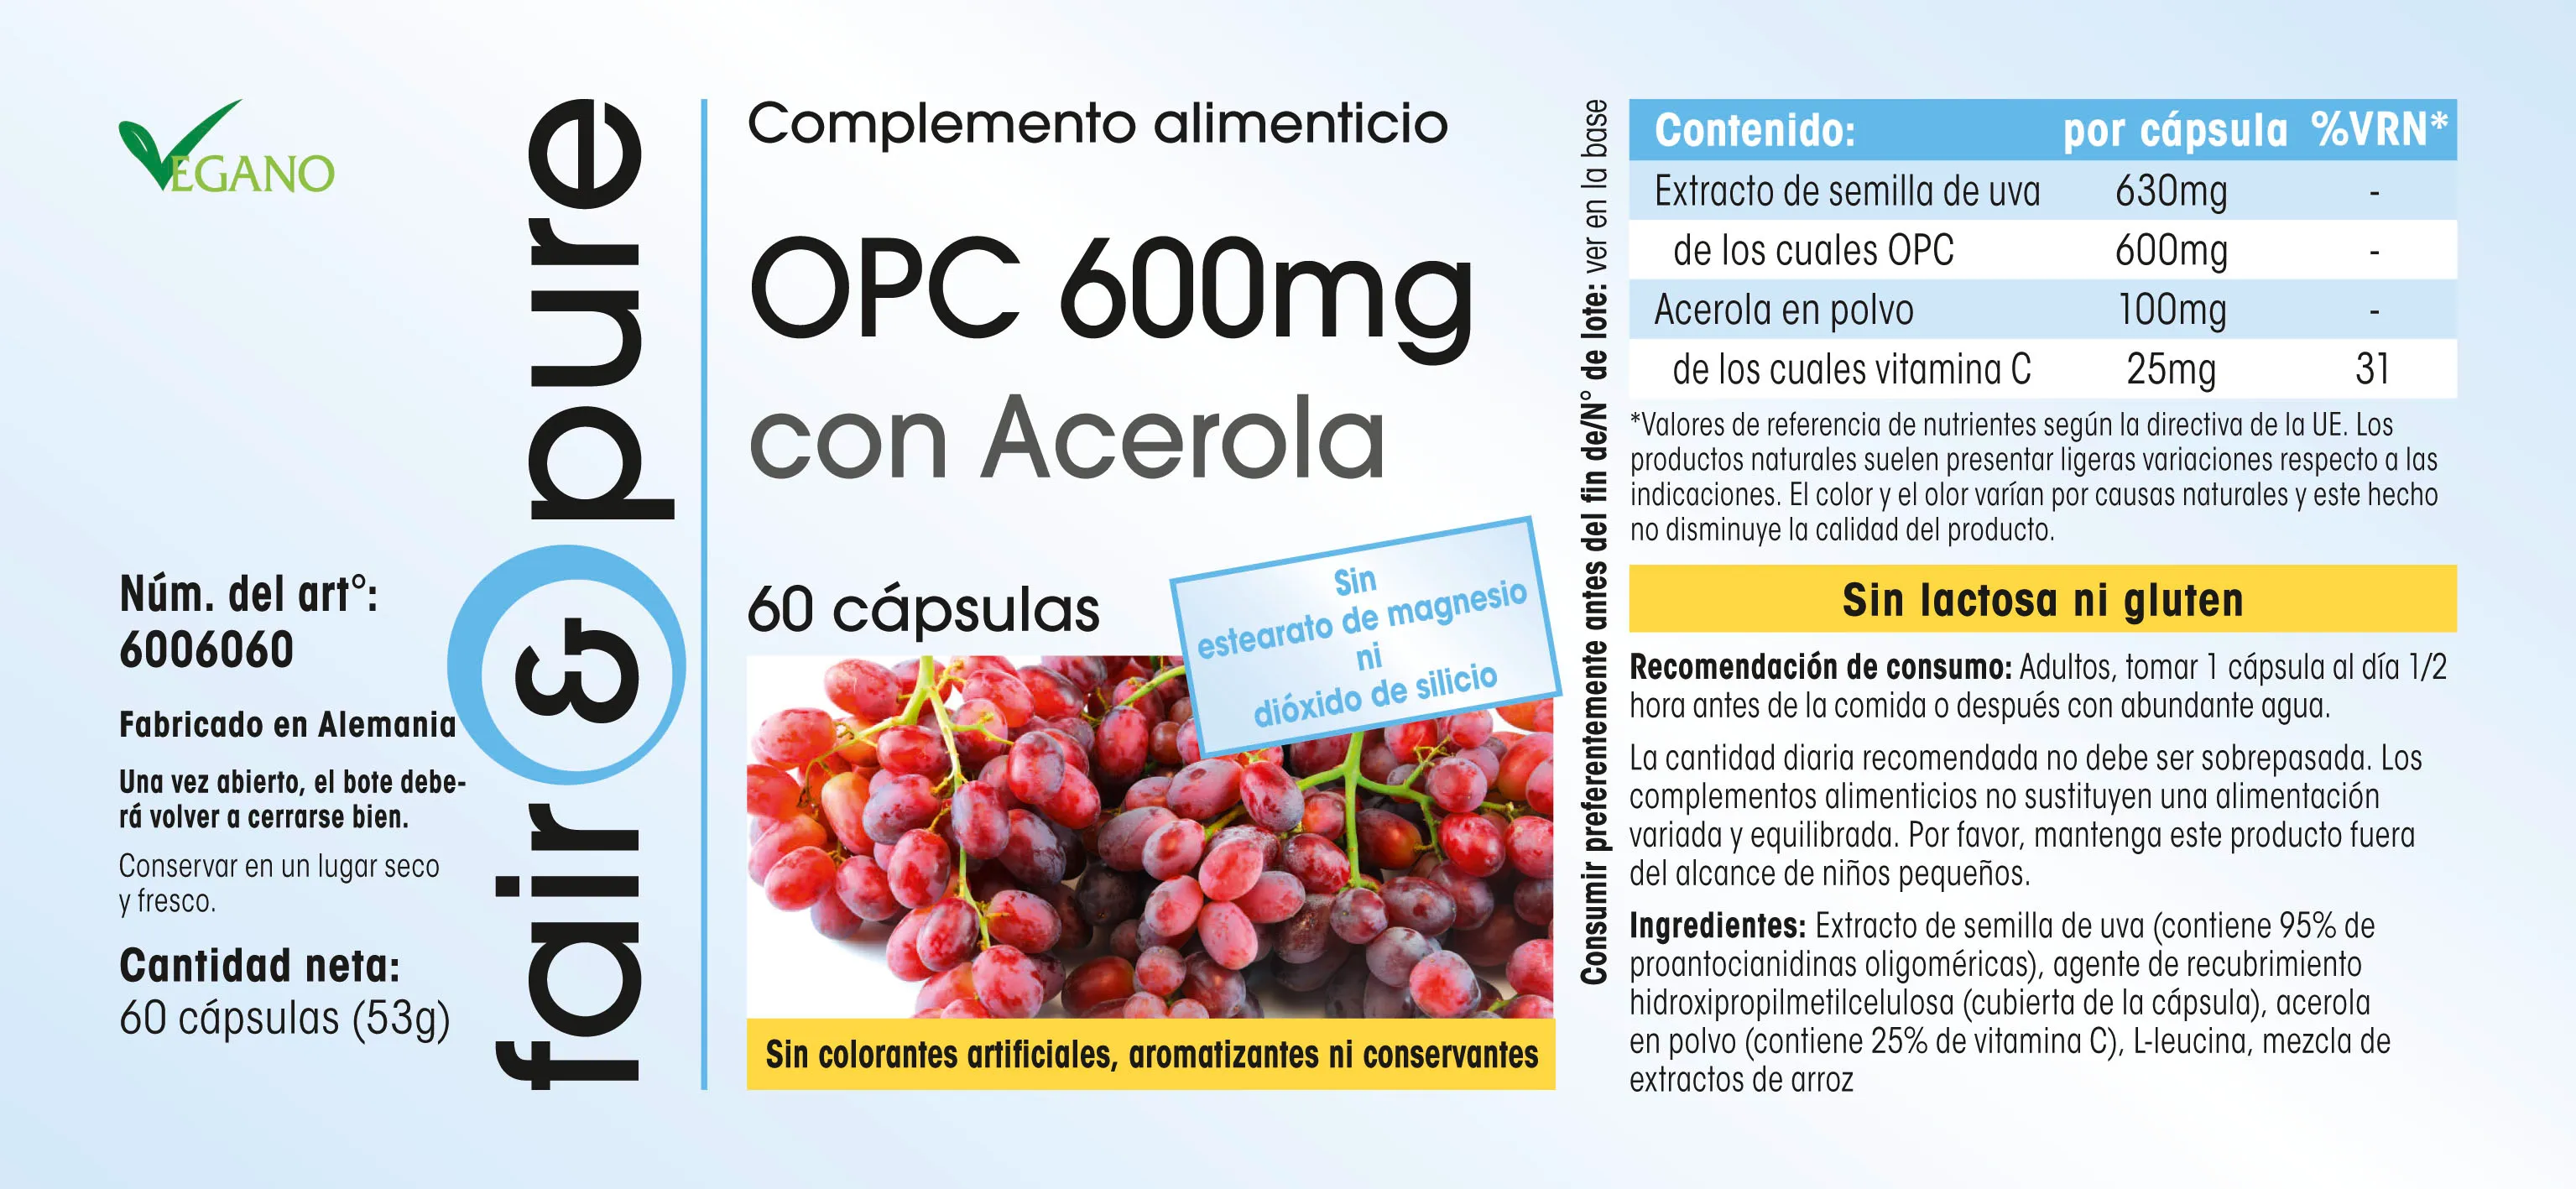 OPC 600mg + Acerola